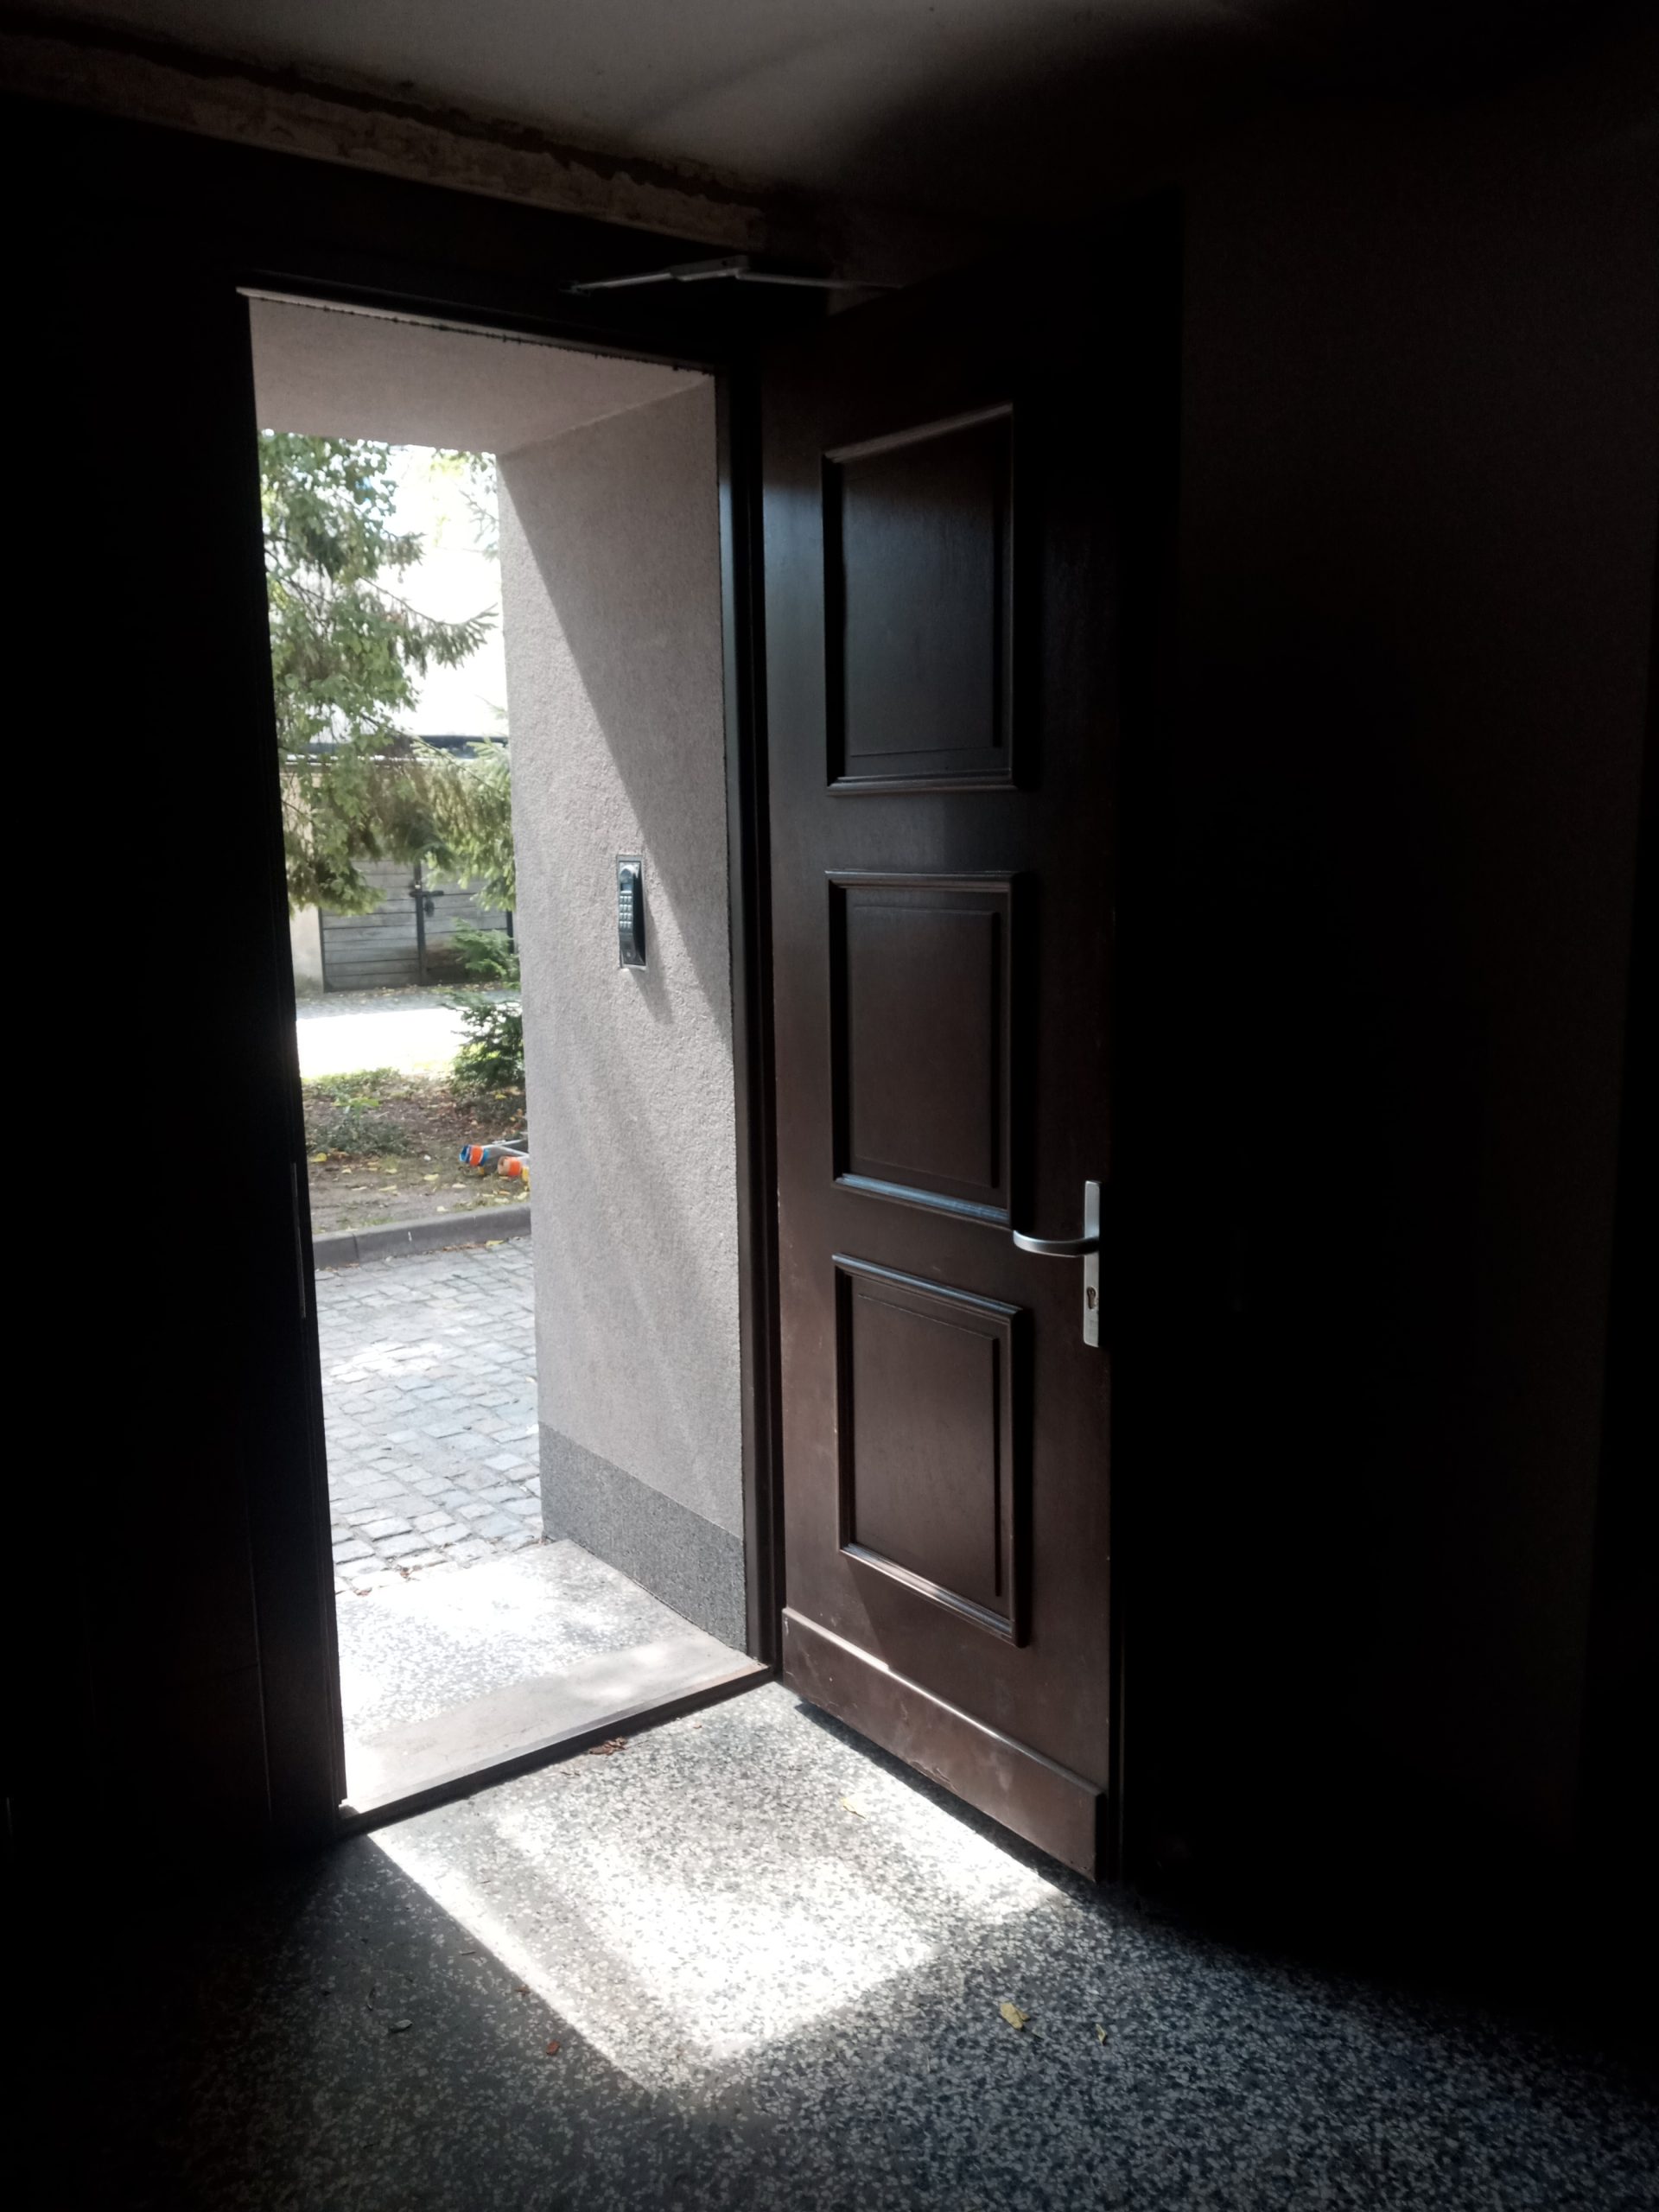 Zdjęcie obrazujące otwarte drzwi wejściowe